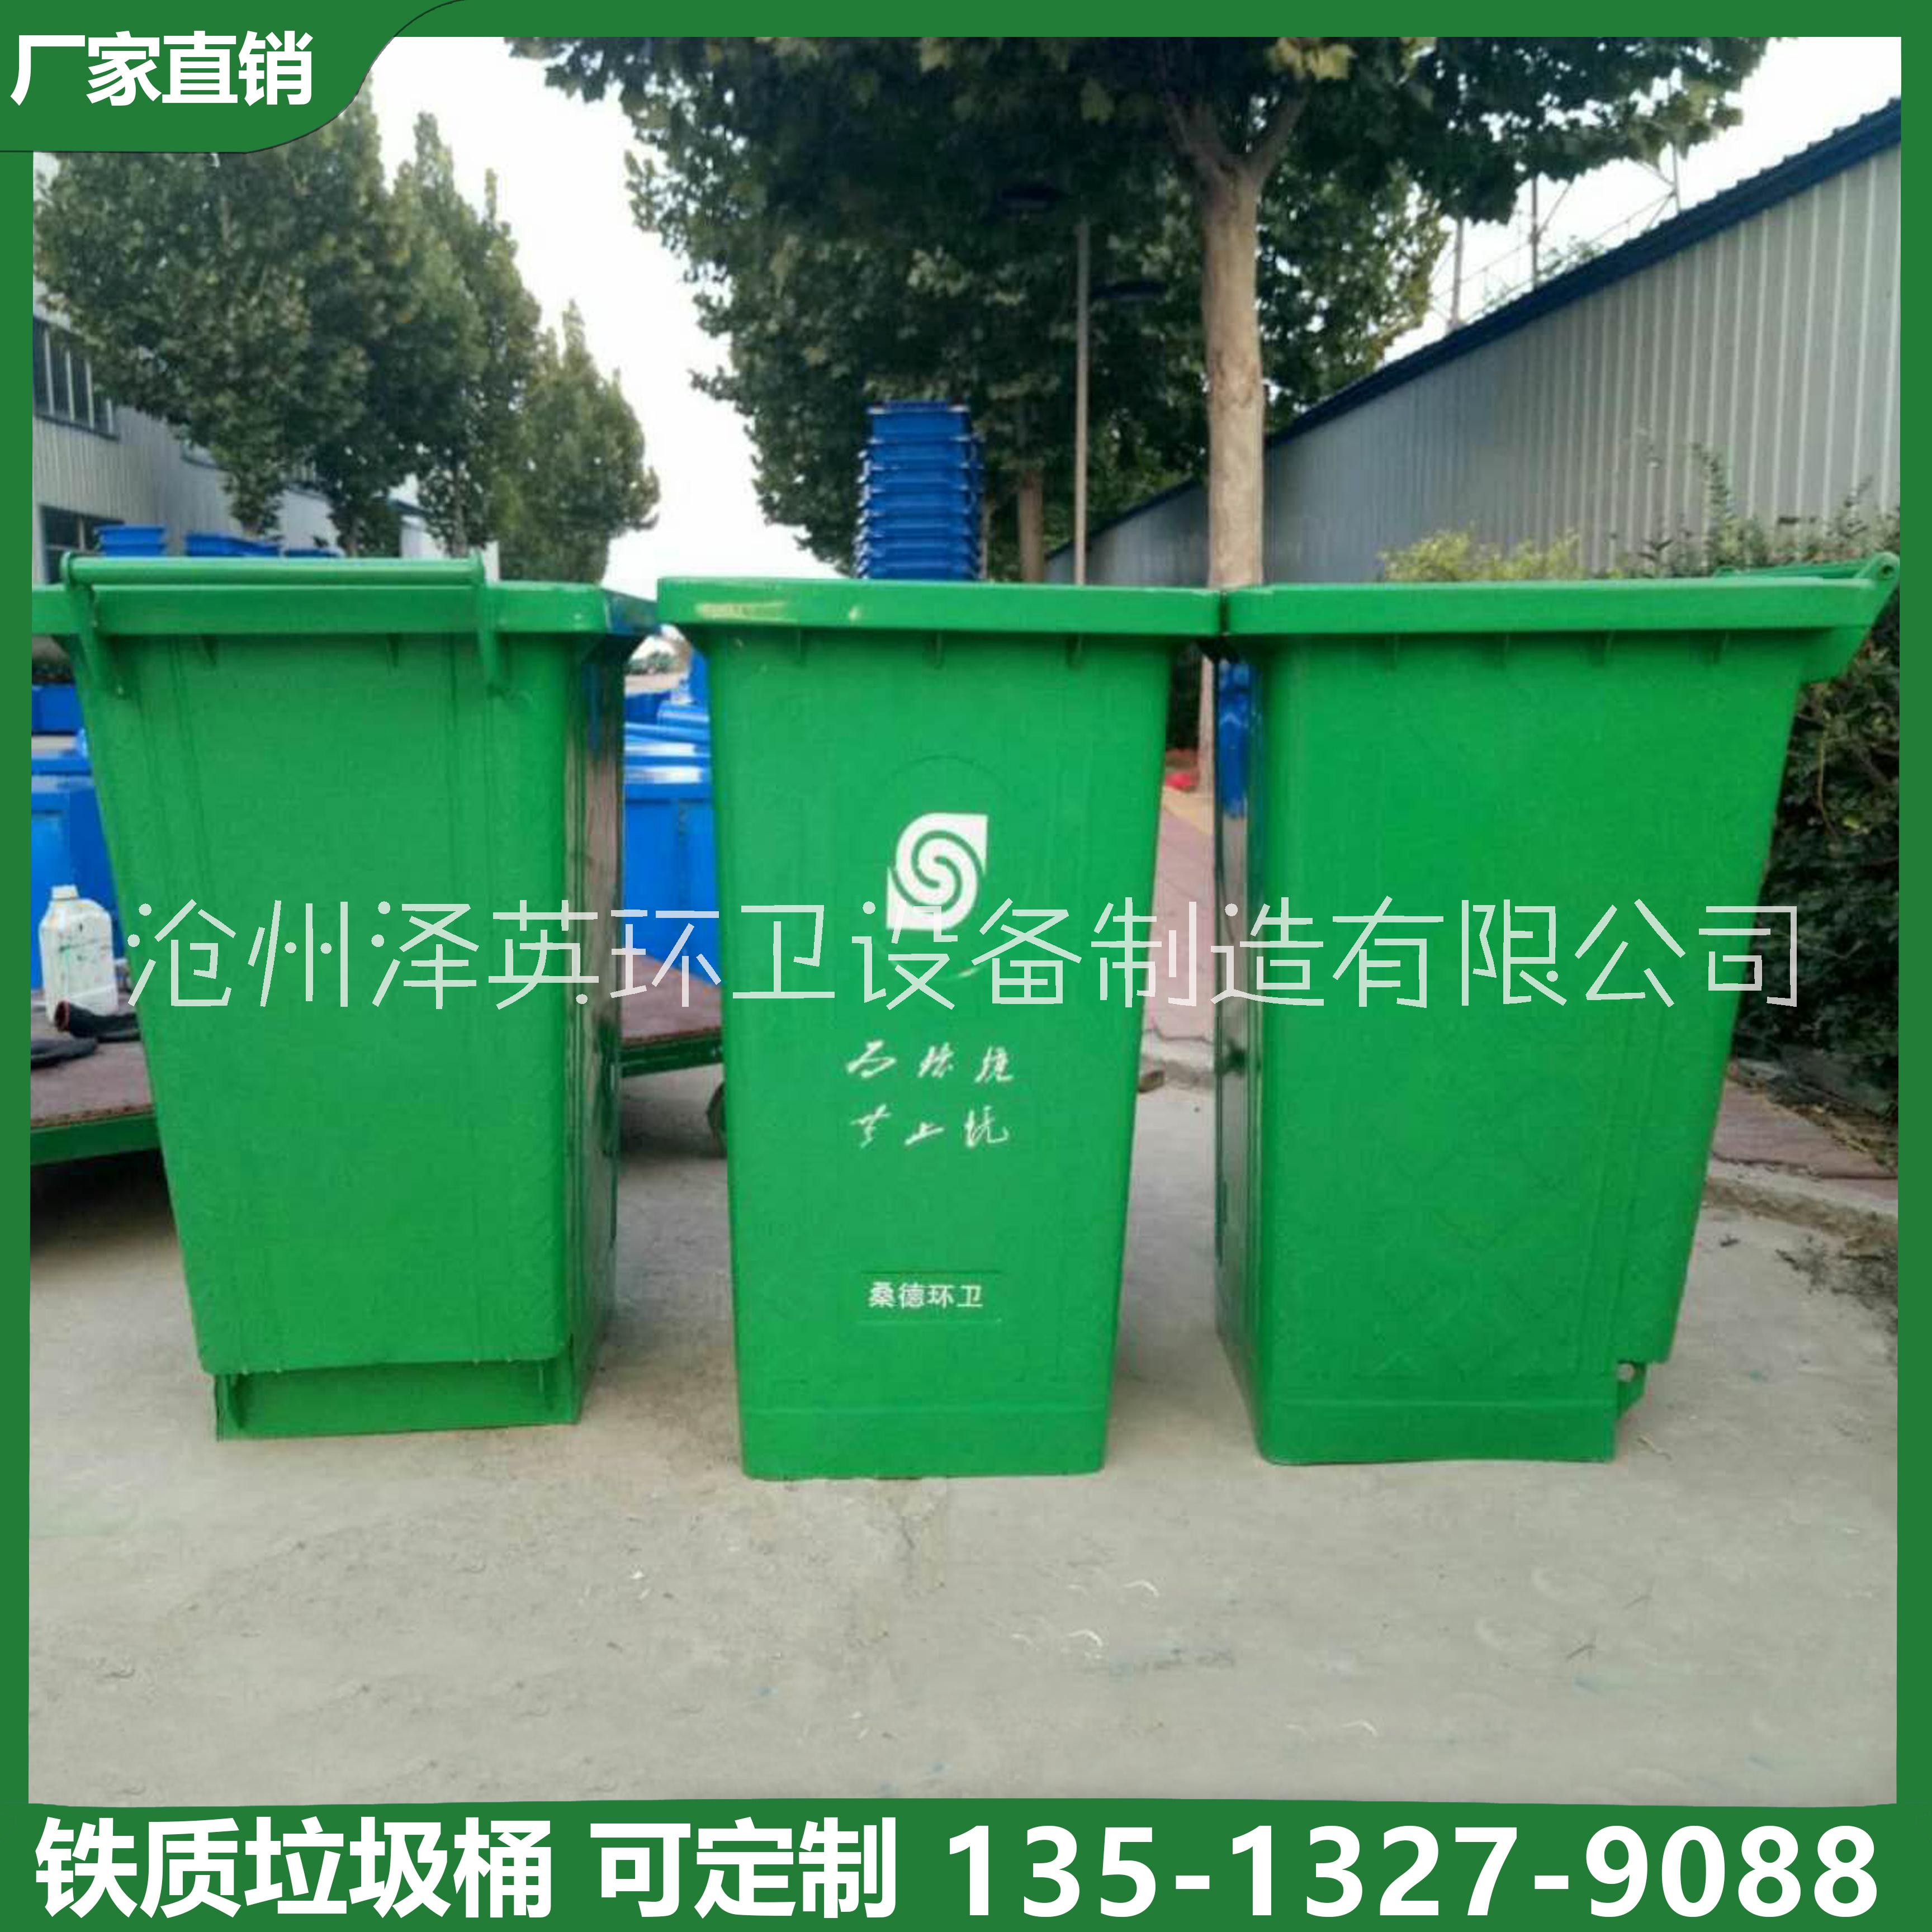 铁质挂车垃圾桶 镀锌垃圾桶分类垃圾桶